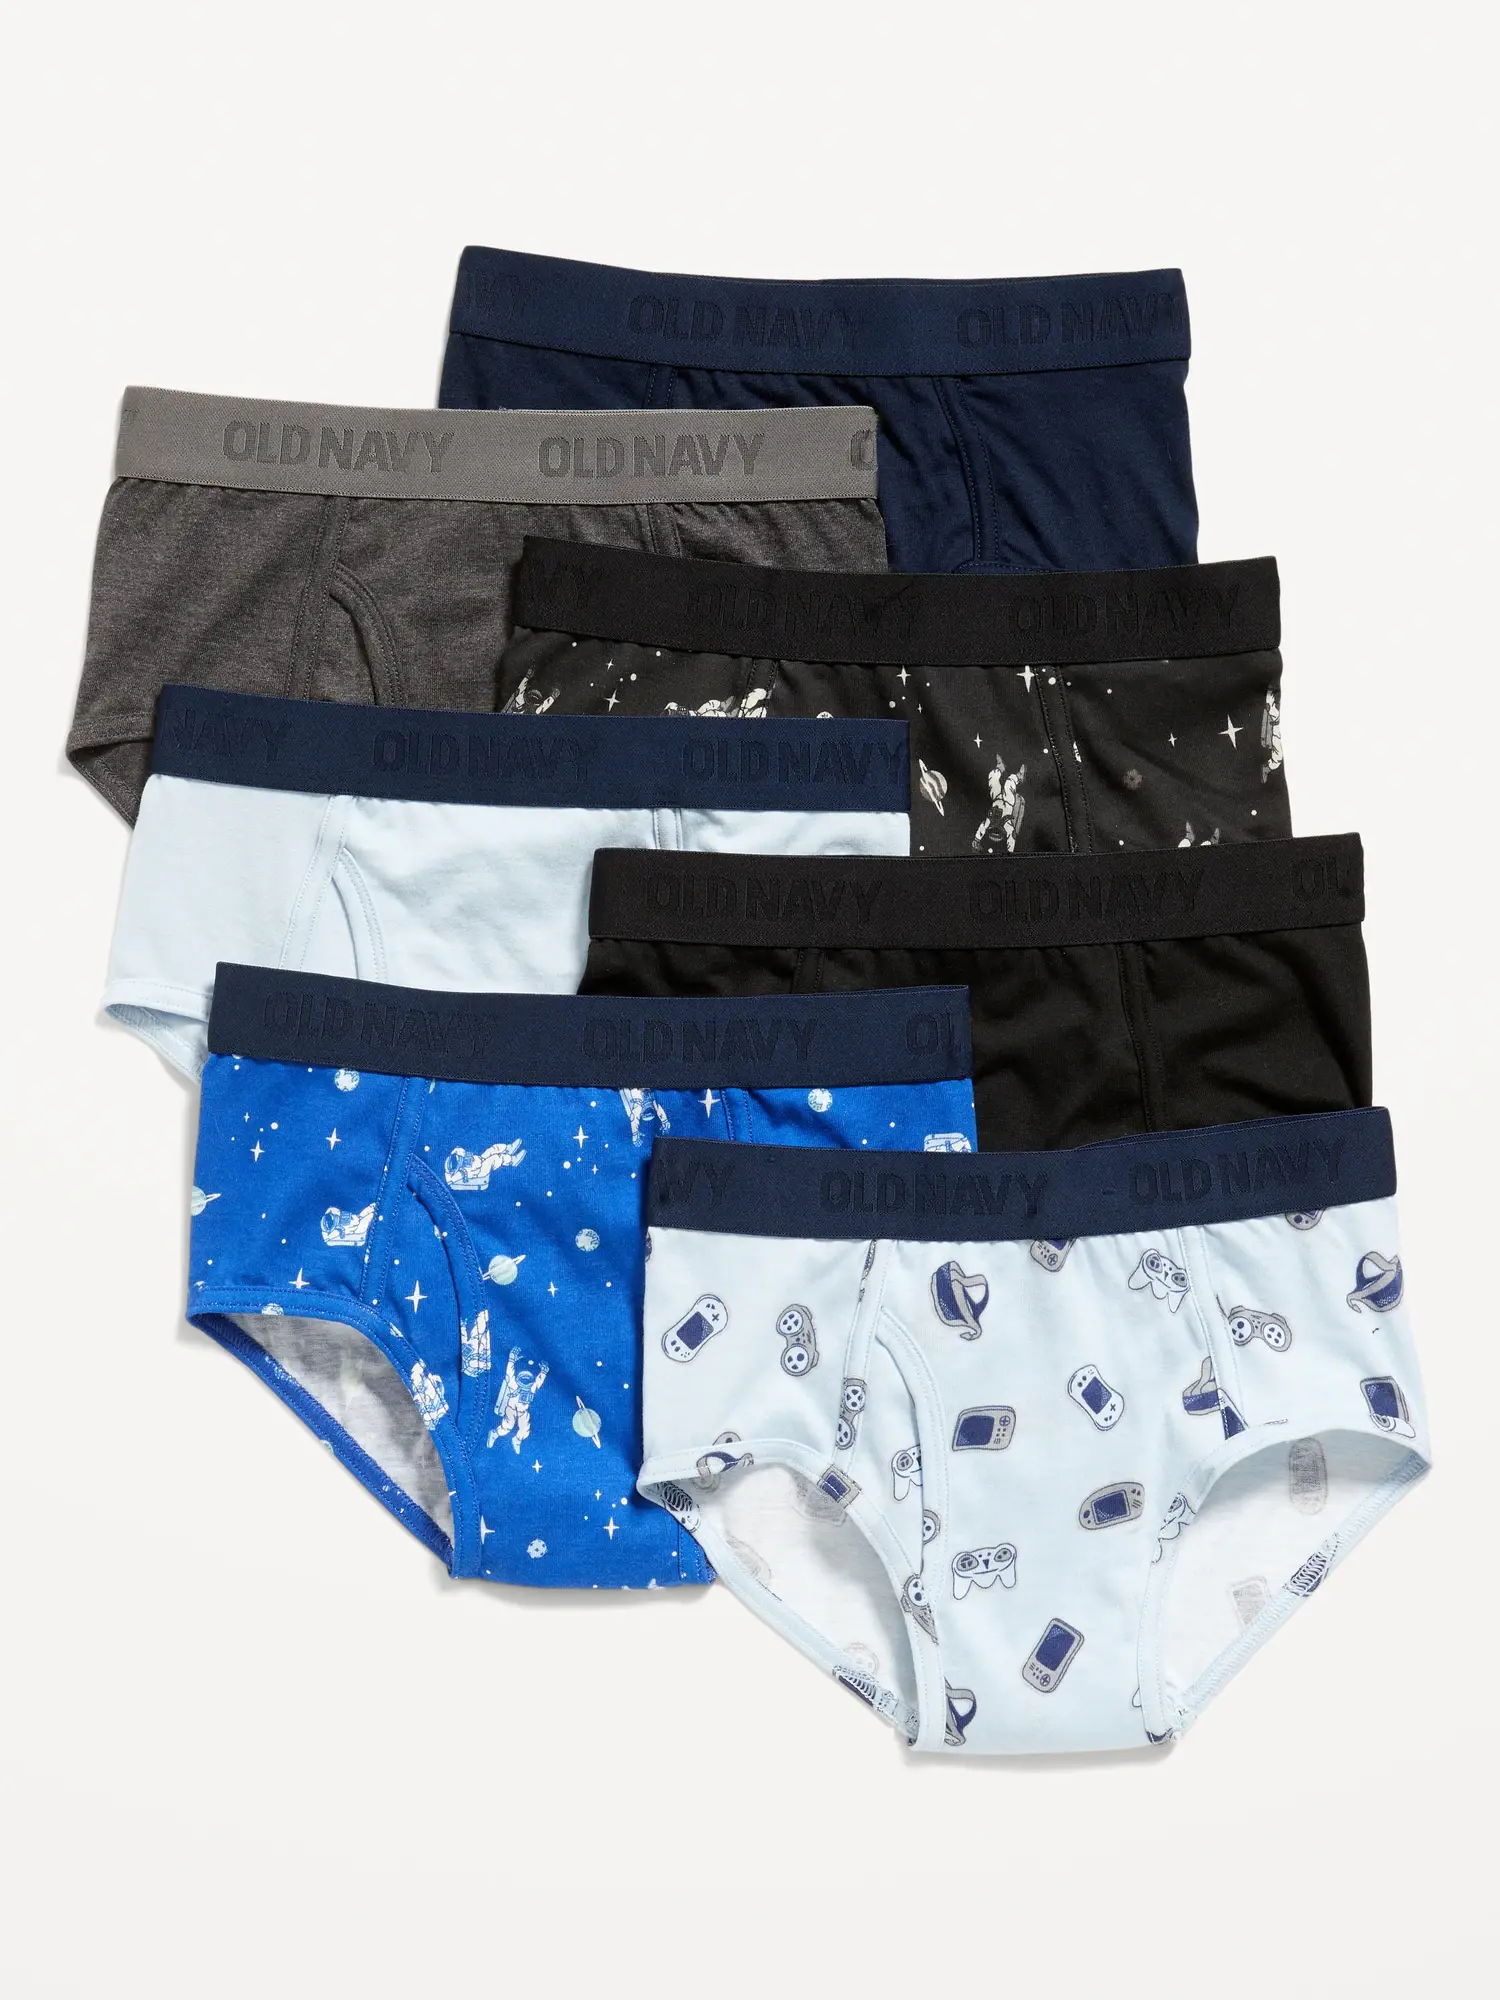 Old Navy Underwear Briefs Variety 7-Pack for Boys blue. 1